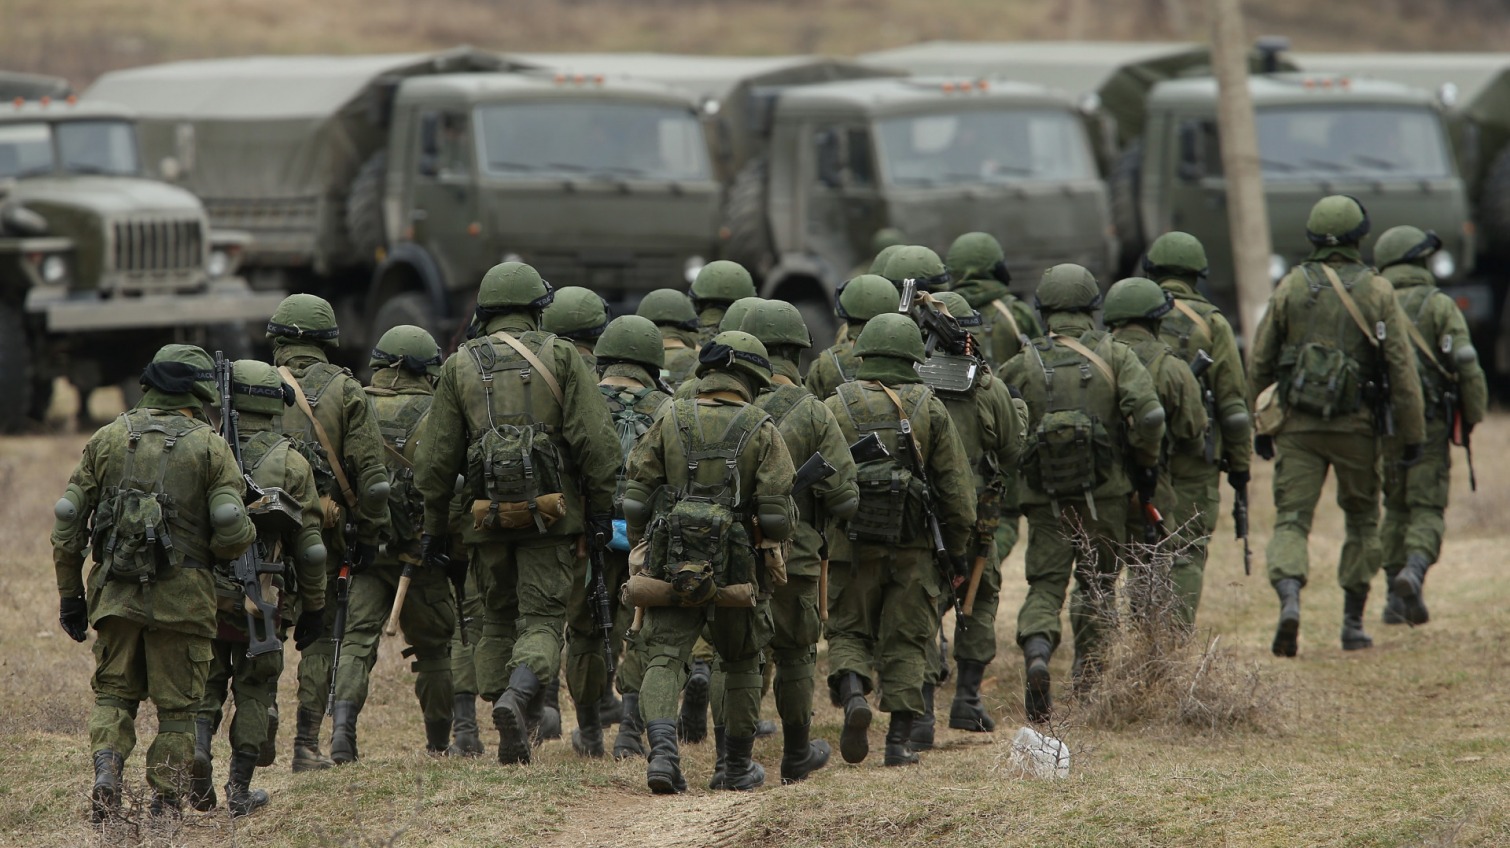 Впервые: в России признали, что на Донбассе есть войска РФ «фото»